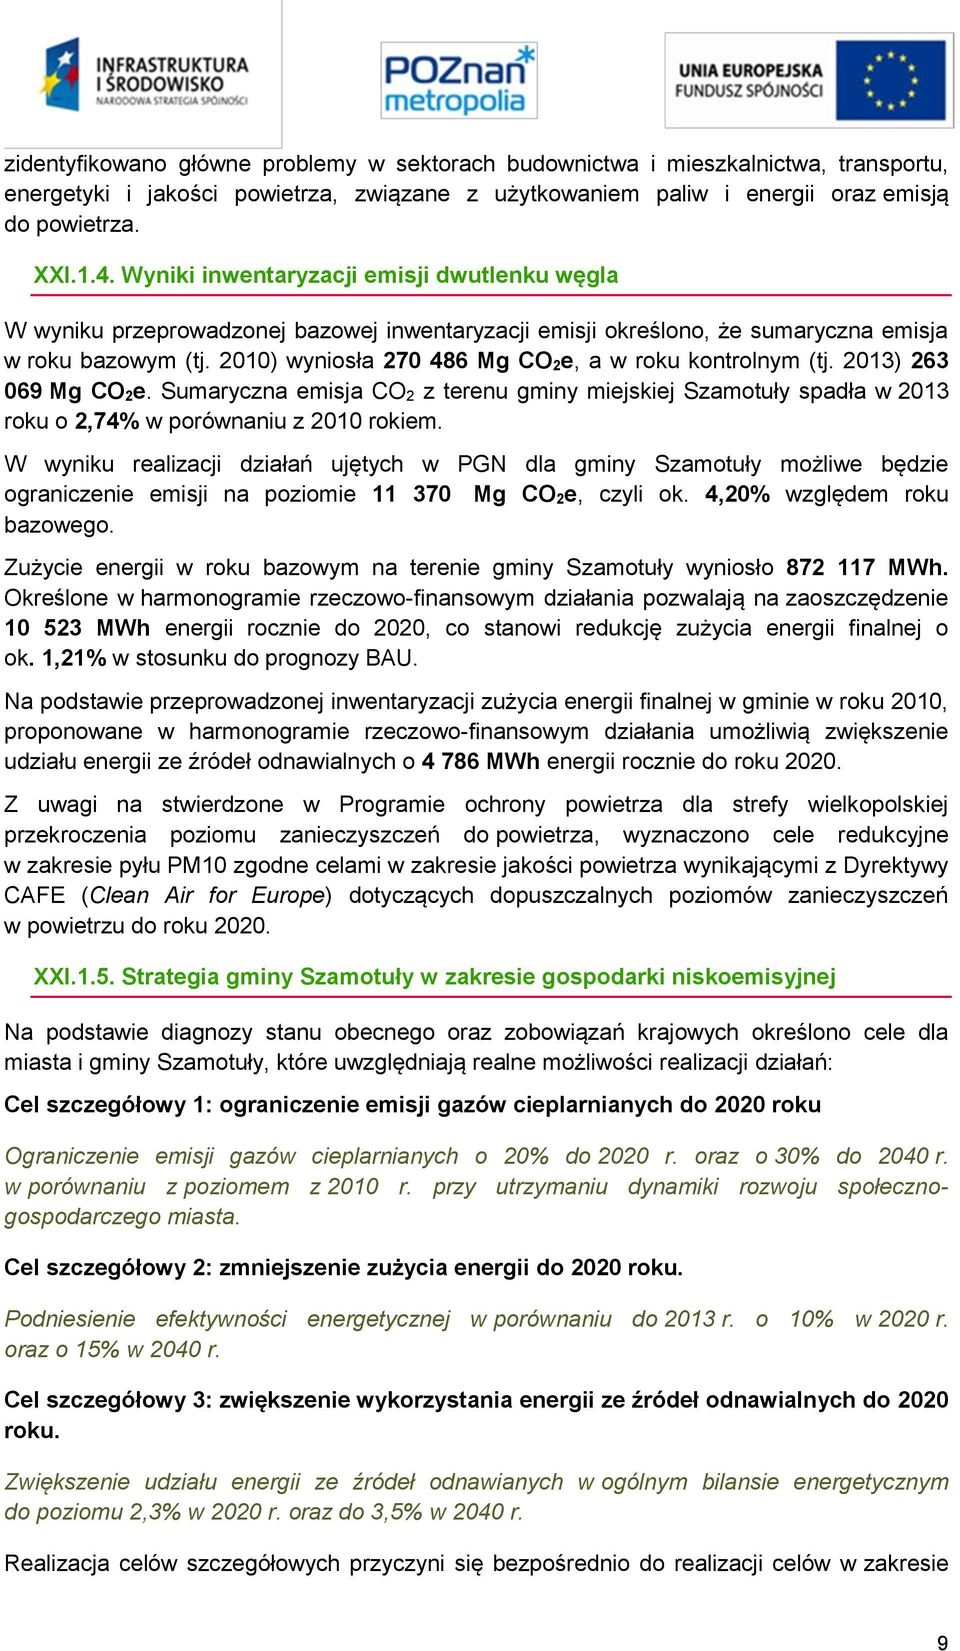 2010) wyniosła 270 486 Mg CO 2e, a w roku kontrolnym (tj. 2013) 263 069 Mg CO 2e. Sumaryczna emisja CO 2 z terenu gminy miejskiej Szamotuły spadła w 2013 roku o 2,74% w porównaniu z 2010 rokiem.